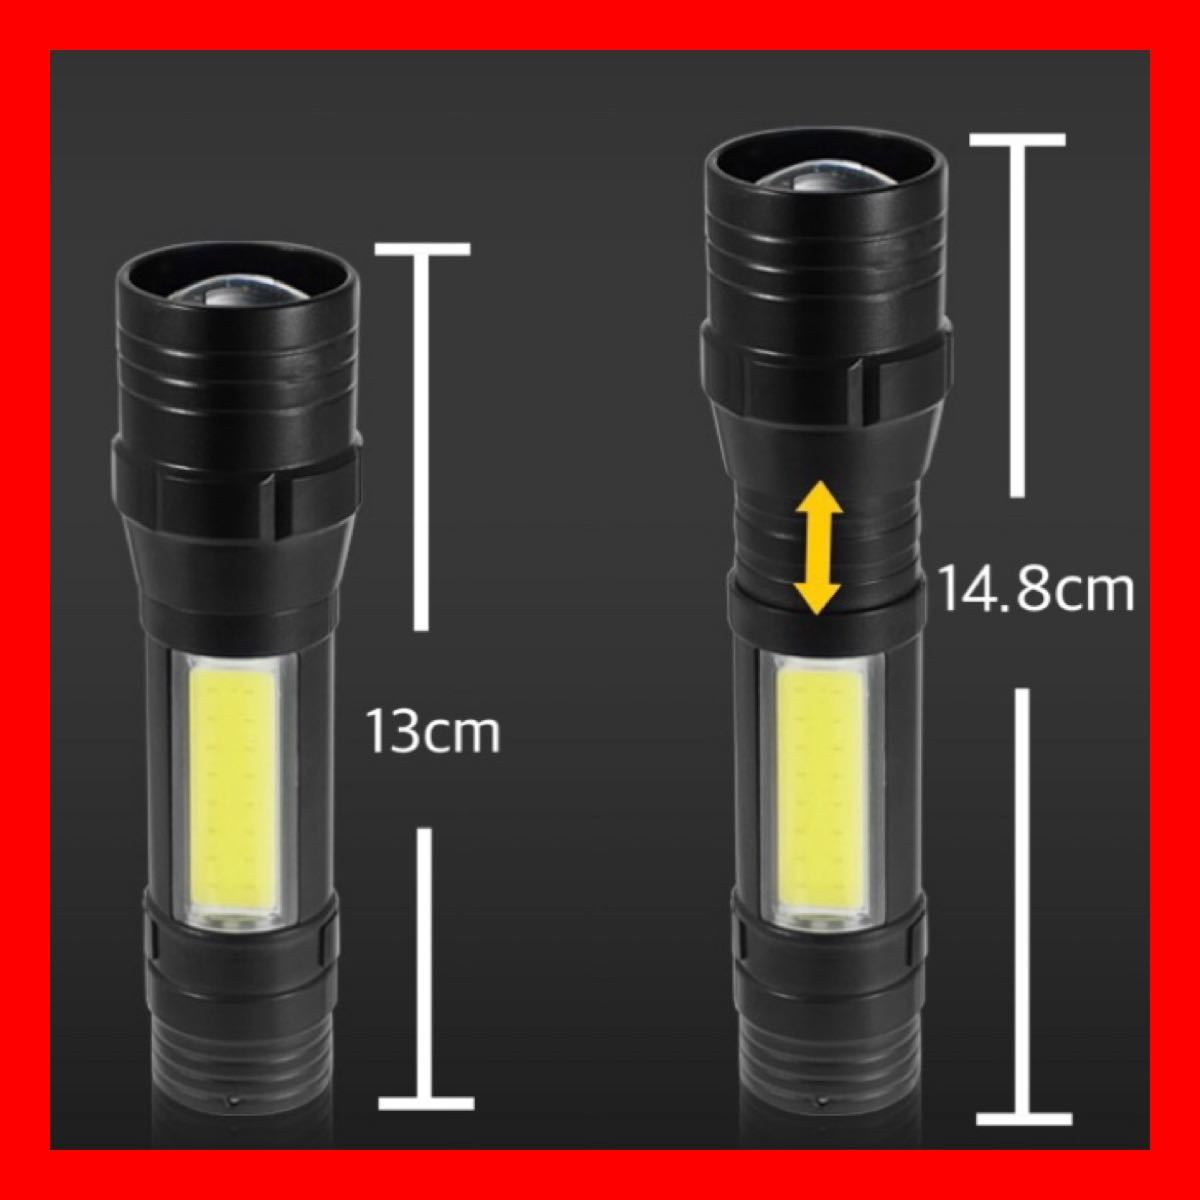 LED 懐中電灯 ハンディライト USB 充電 防水 多機能 ズーム モード 作業灯 高輝度LED フラッシュライト 充電式